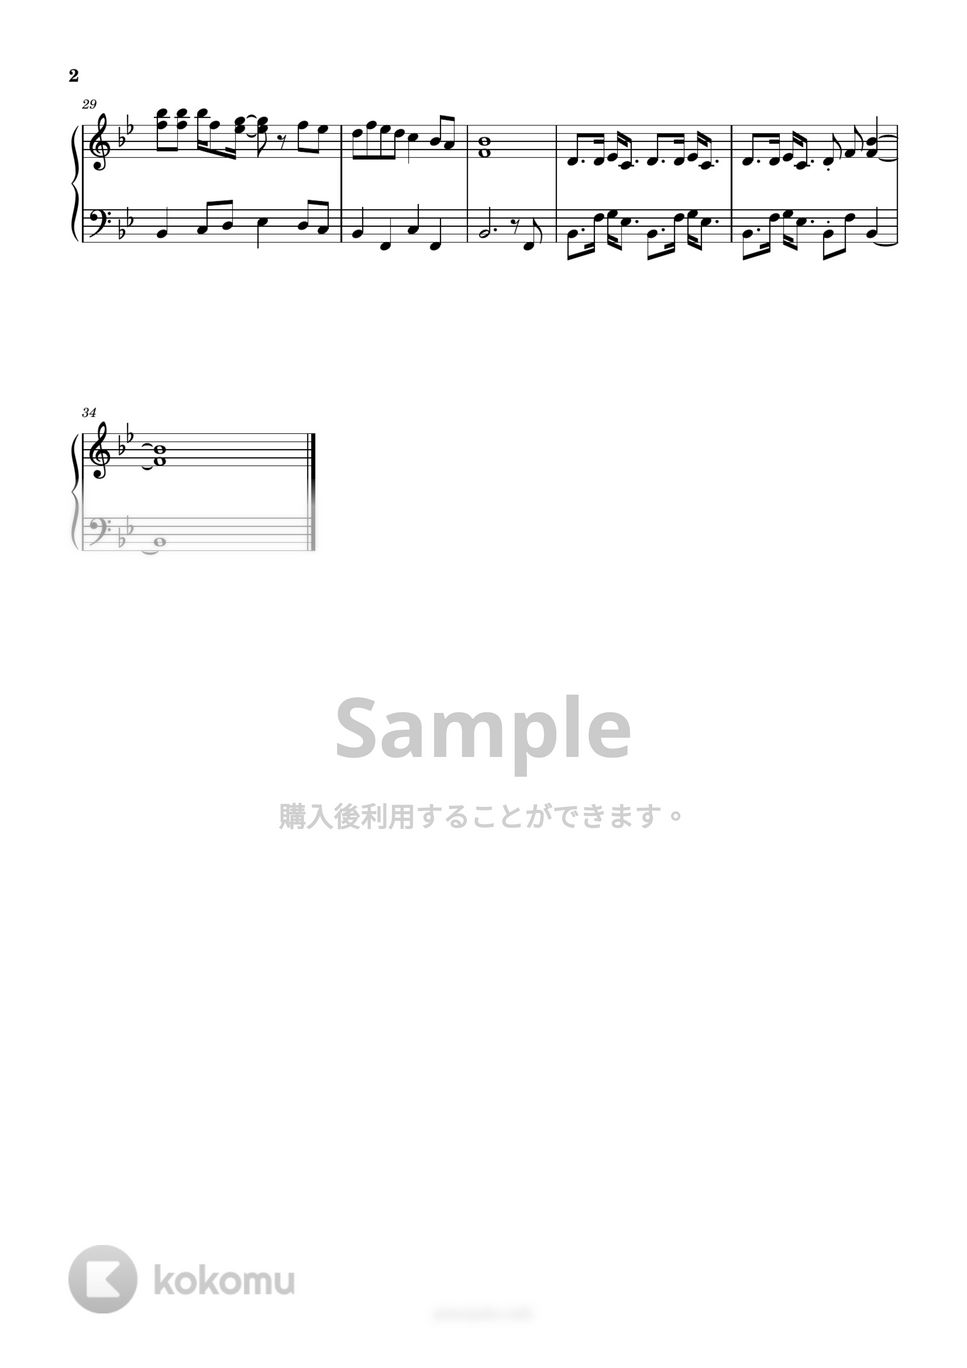 カーペンターズ - トップ・オブ・ザ・ワールド (簡単楽譜) by ピアノ塾